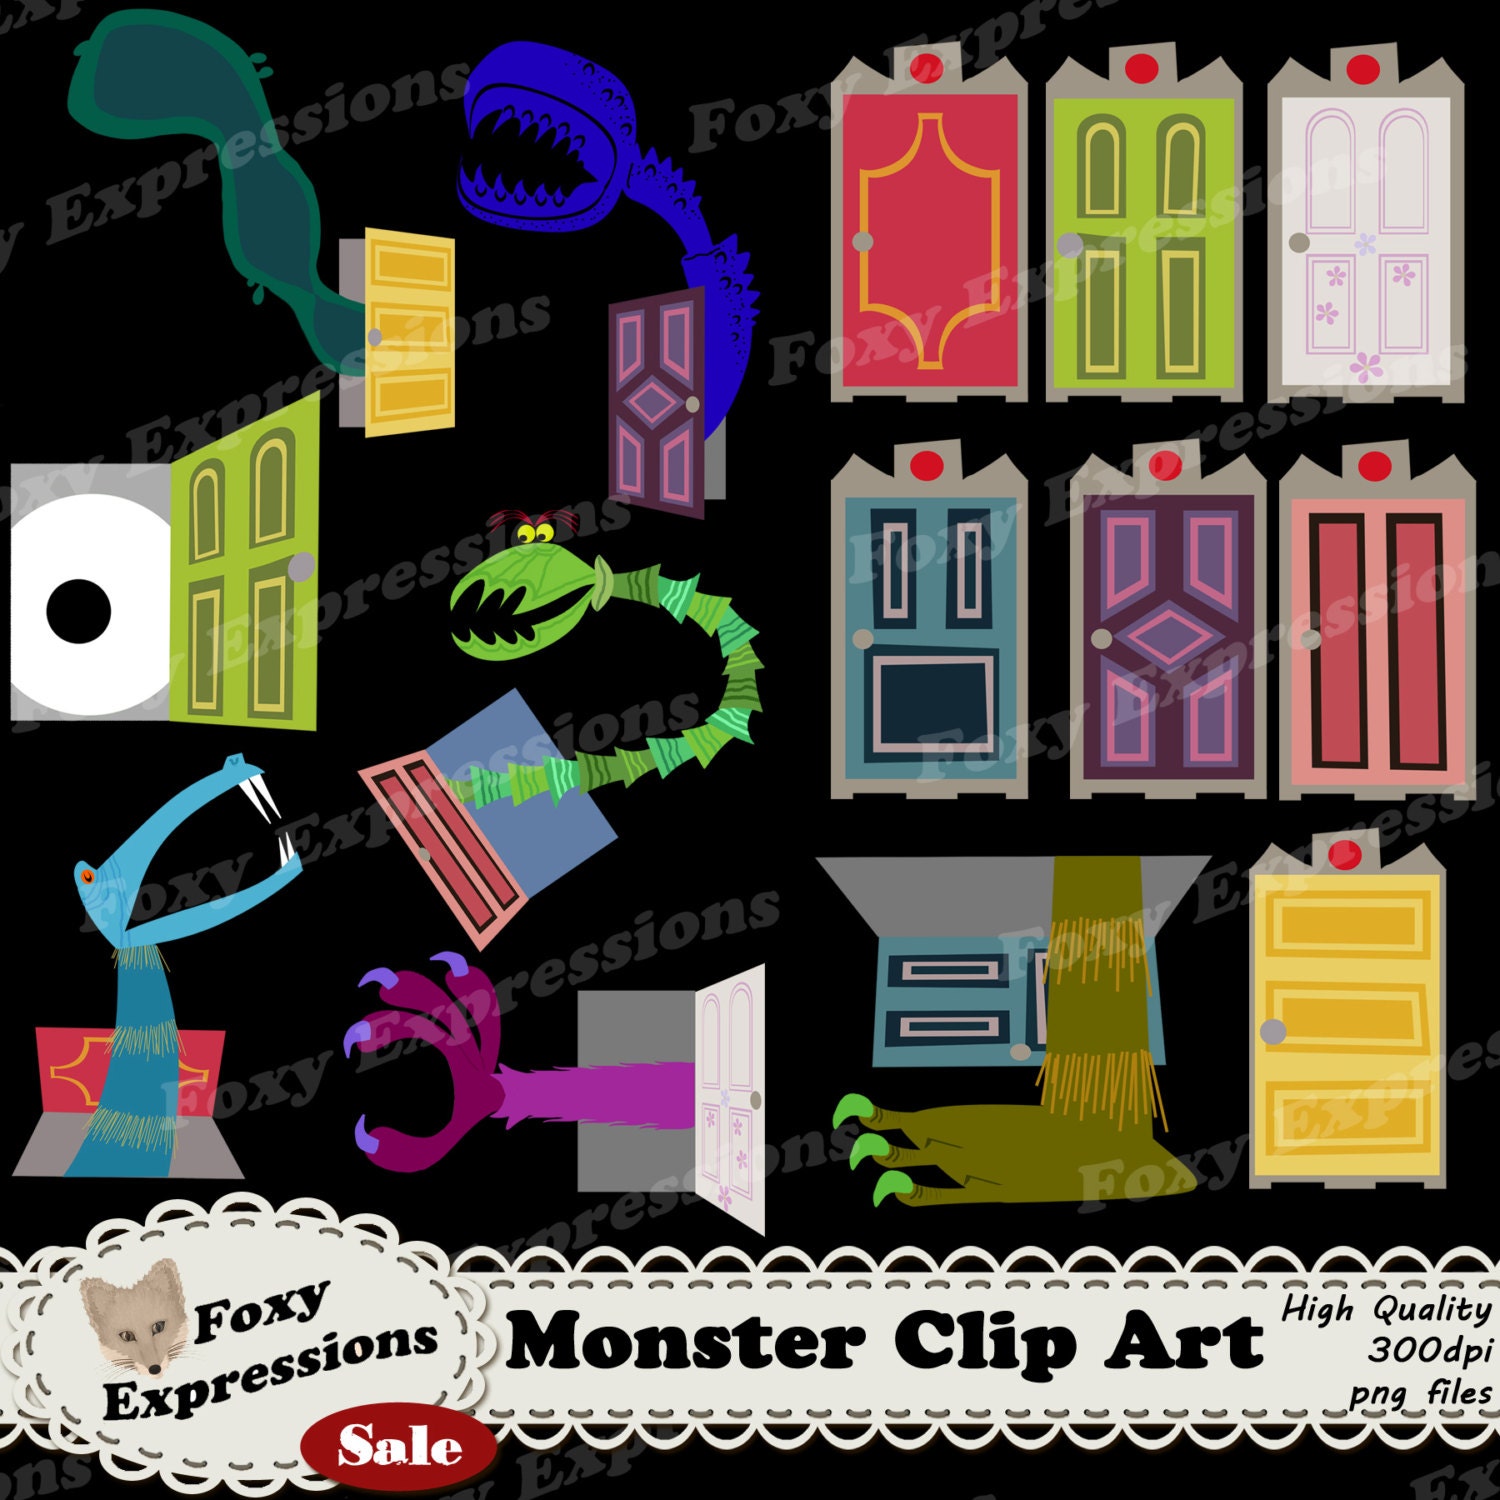 Doors Seek Monster Building Toy Set for Kids, Boys, Girls; Horror